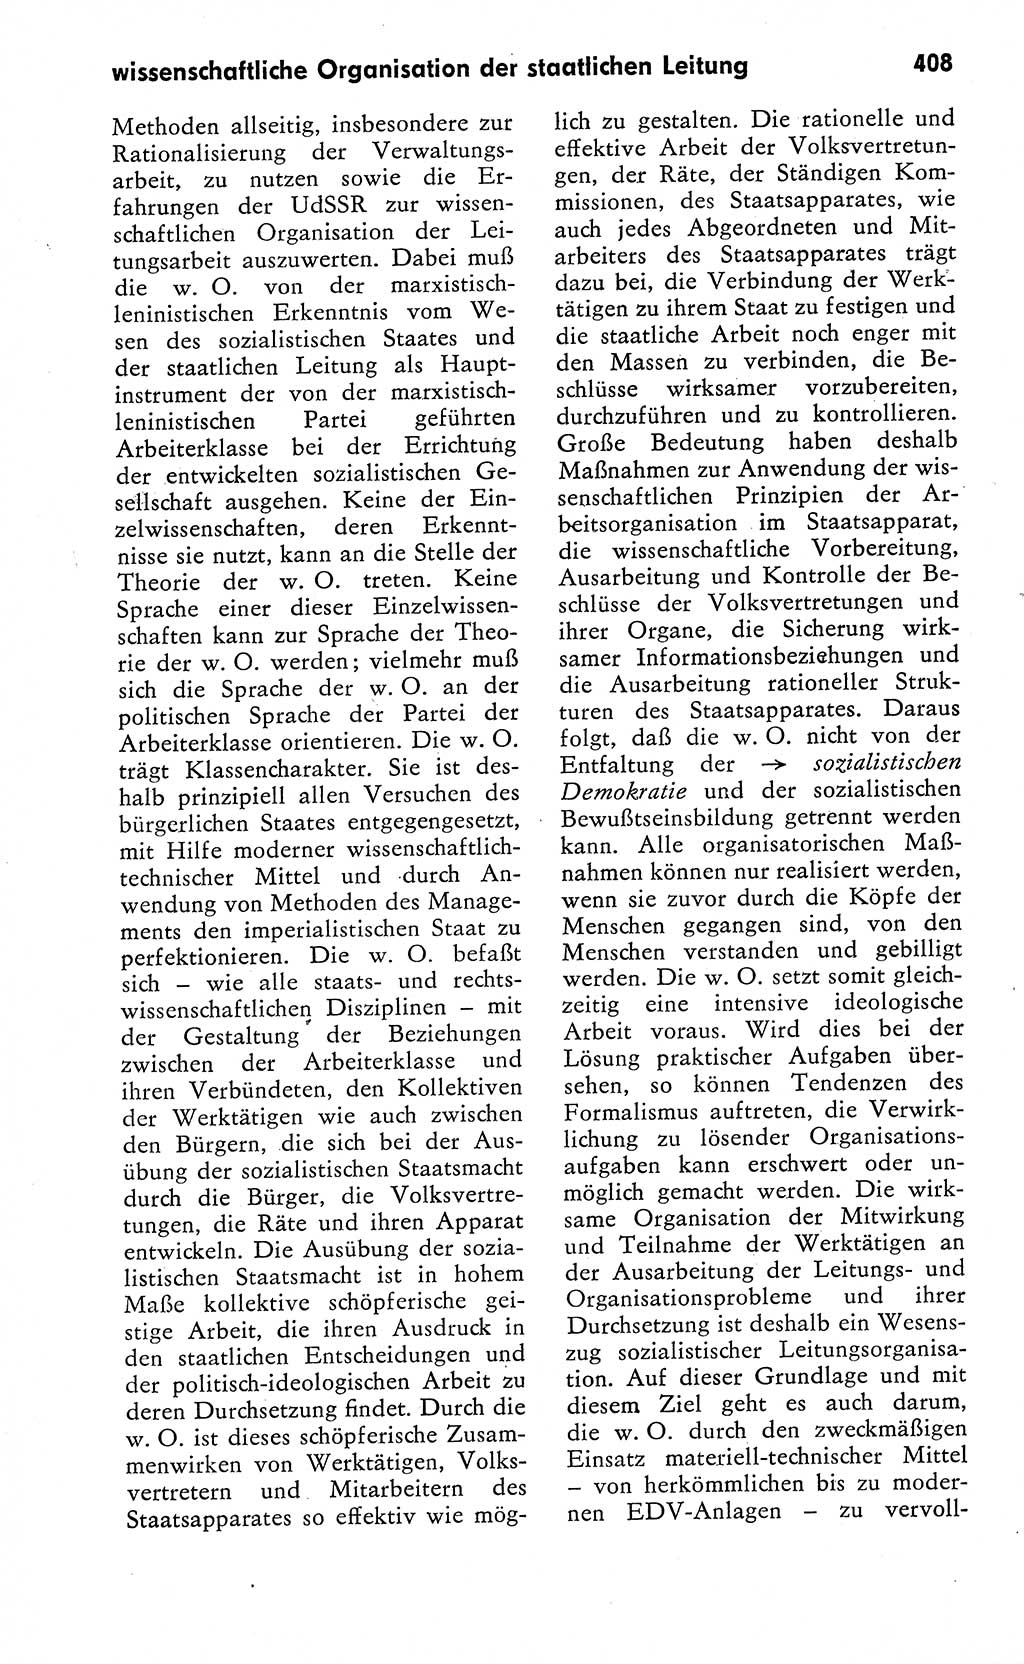 Wörterbuch zum sozialistischen Staat [Deutsche Demokratische Republik (DDR)] 1974, Seite 408 (Wb. soz. St. DDR 1974, S. 408)